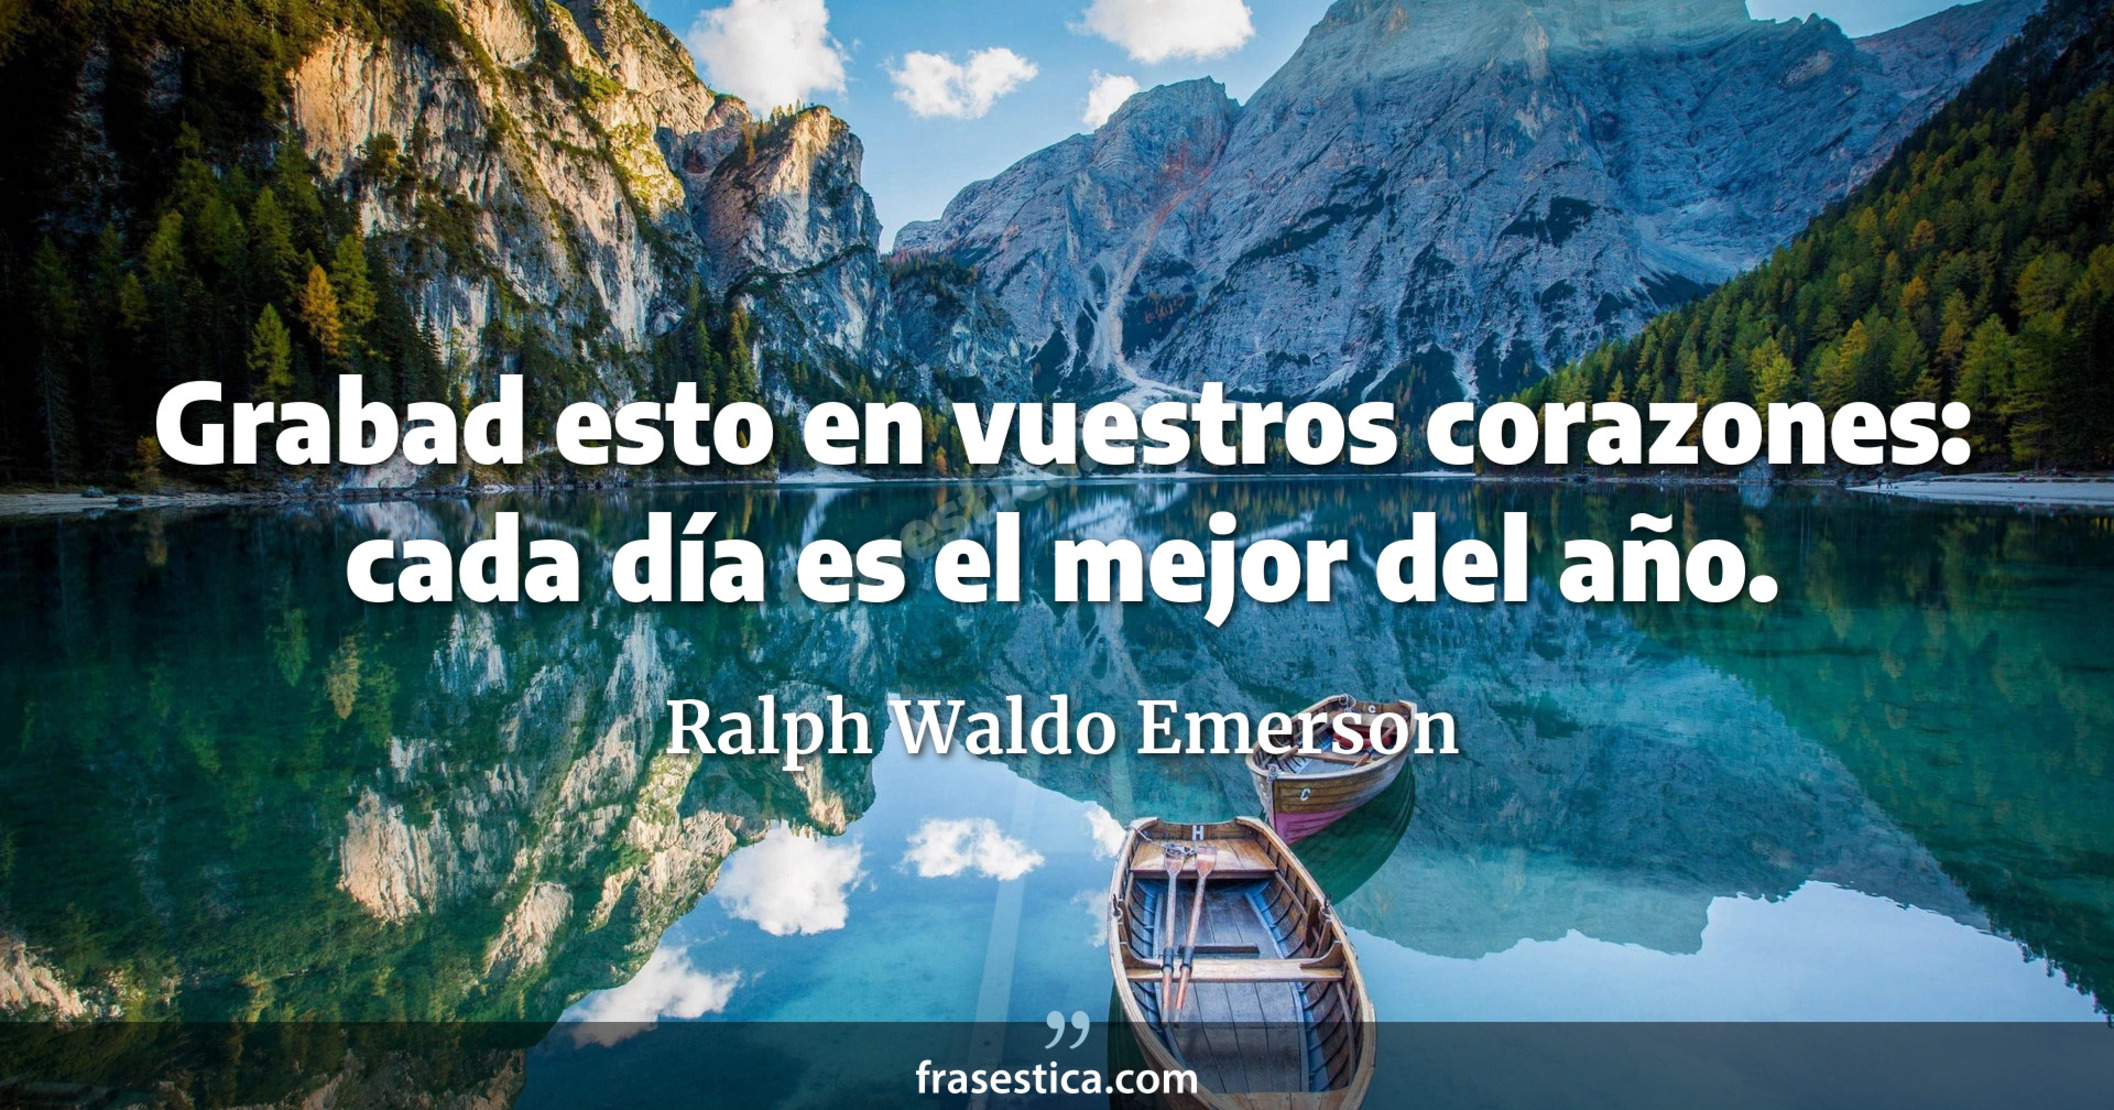 Grabad esto en vuestros corazones: cada día es el mejor del año. - Ralph Waldo Emerson